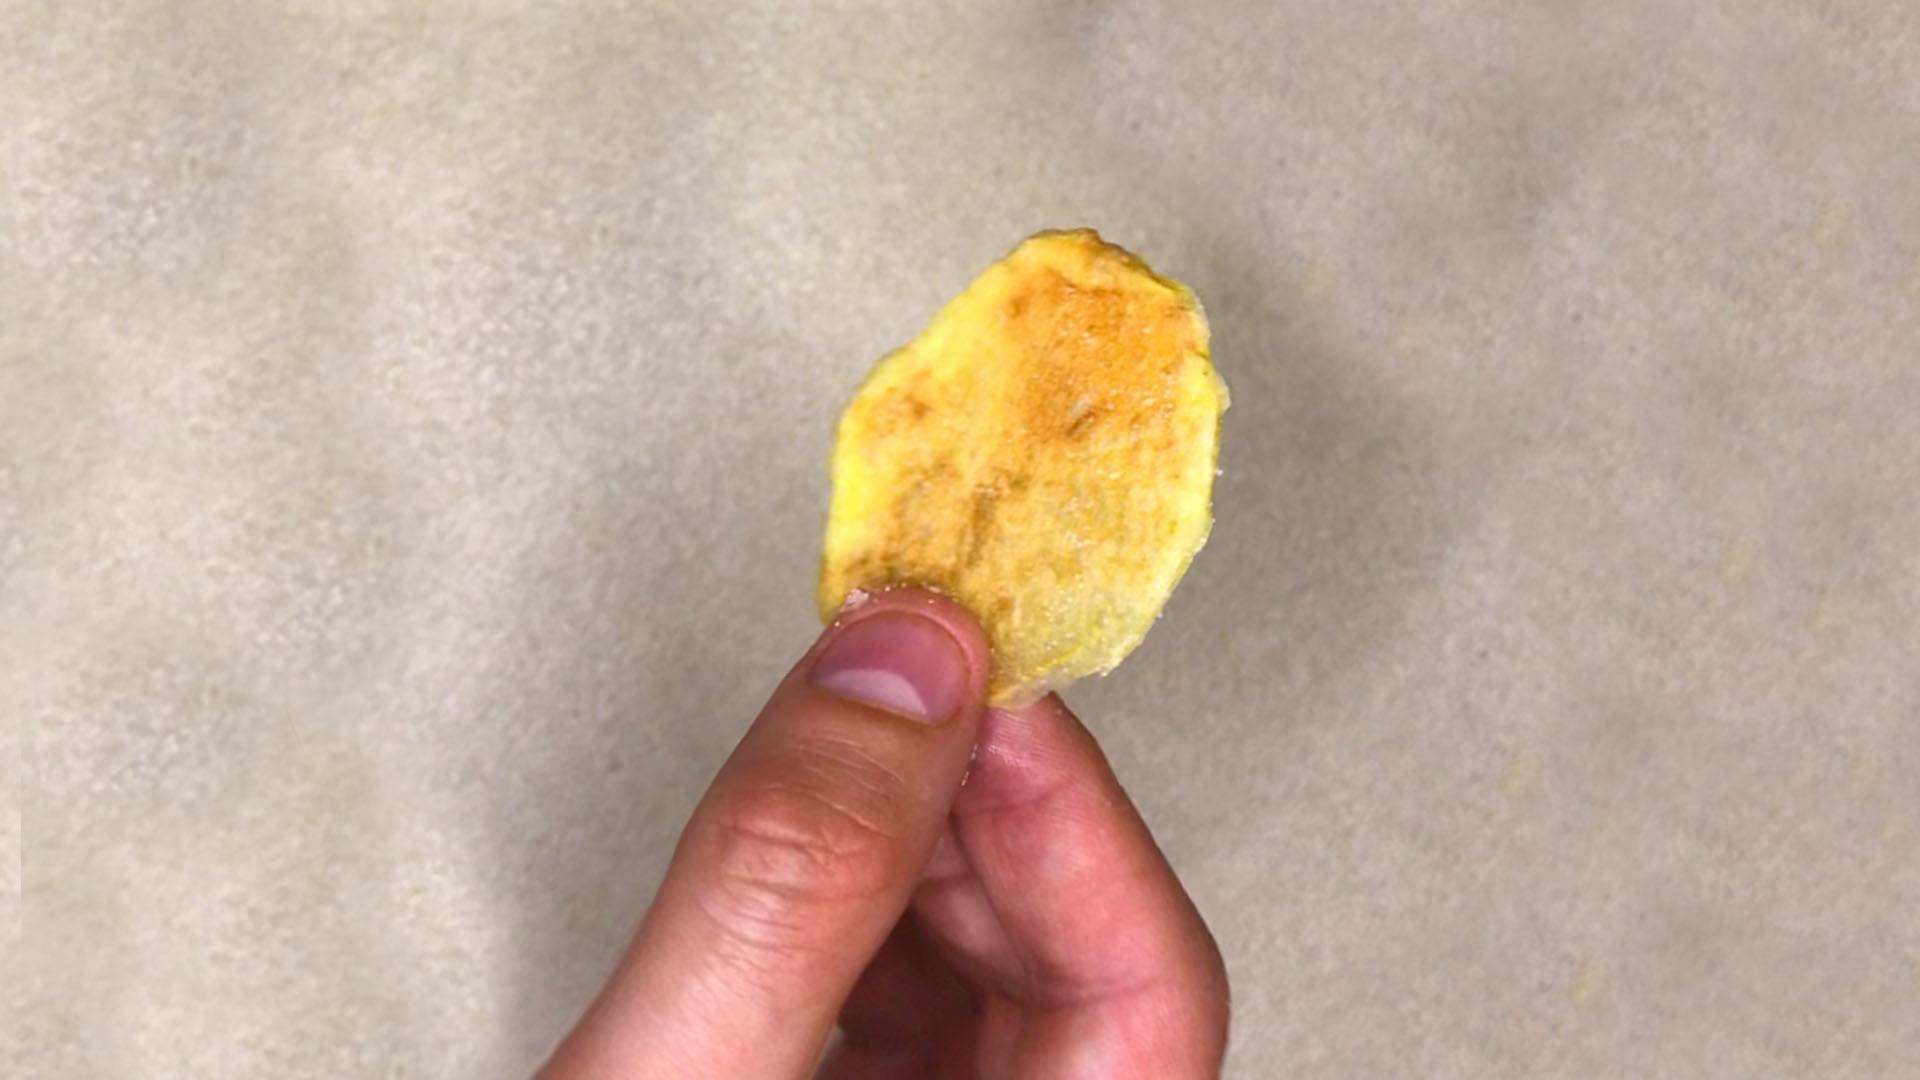 Házi chips (sült krumpli) készítés mikróban – Mikrós sült krumpli csipsz 10 perc alatt